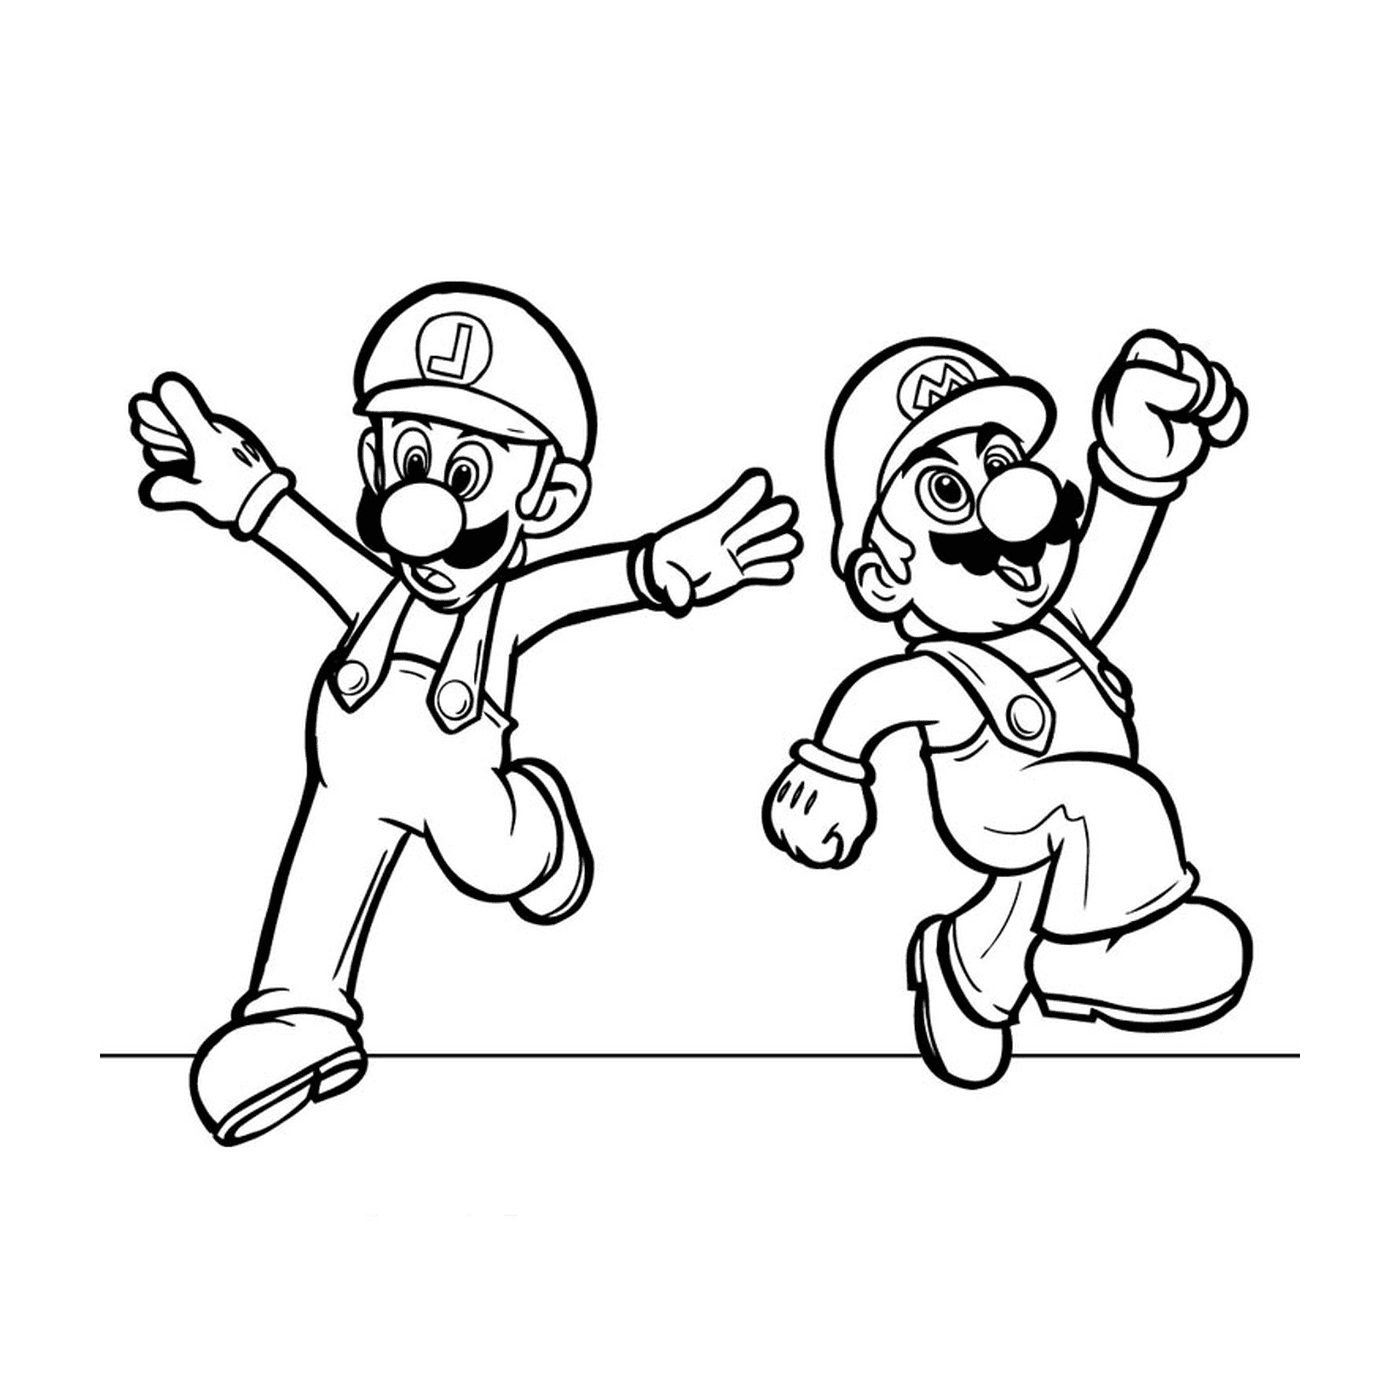  Mario e Luigi insieme 